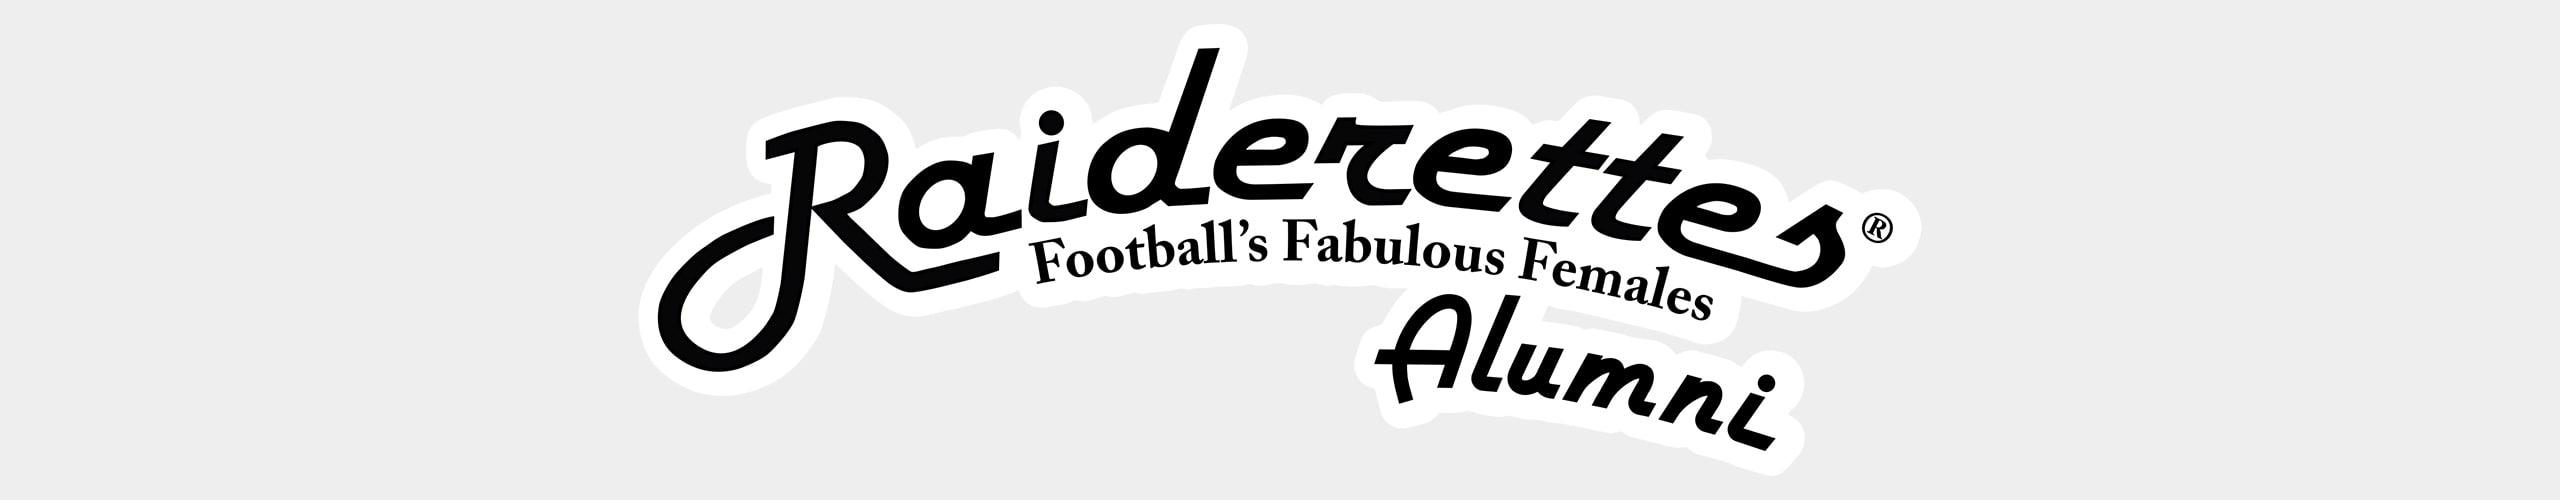 Raiderettes Logo - Raiderettes Alumni